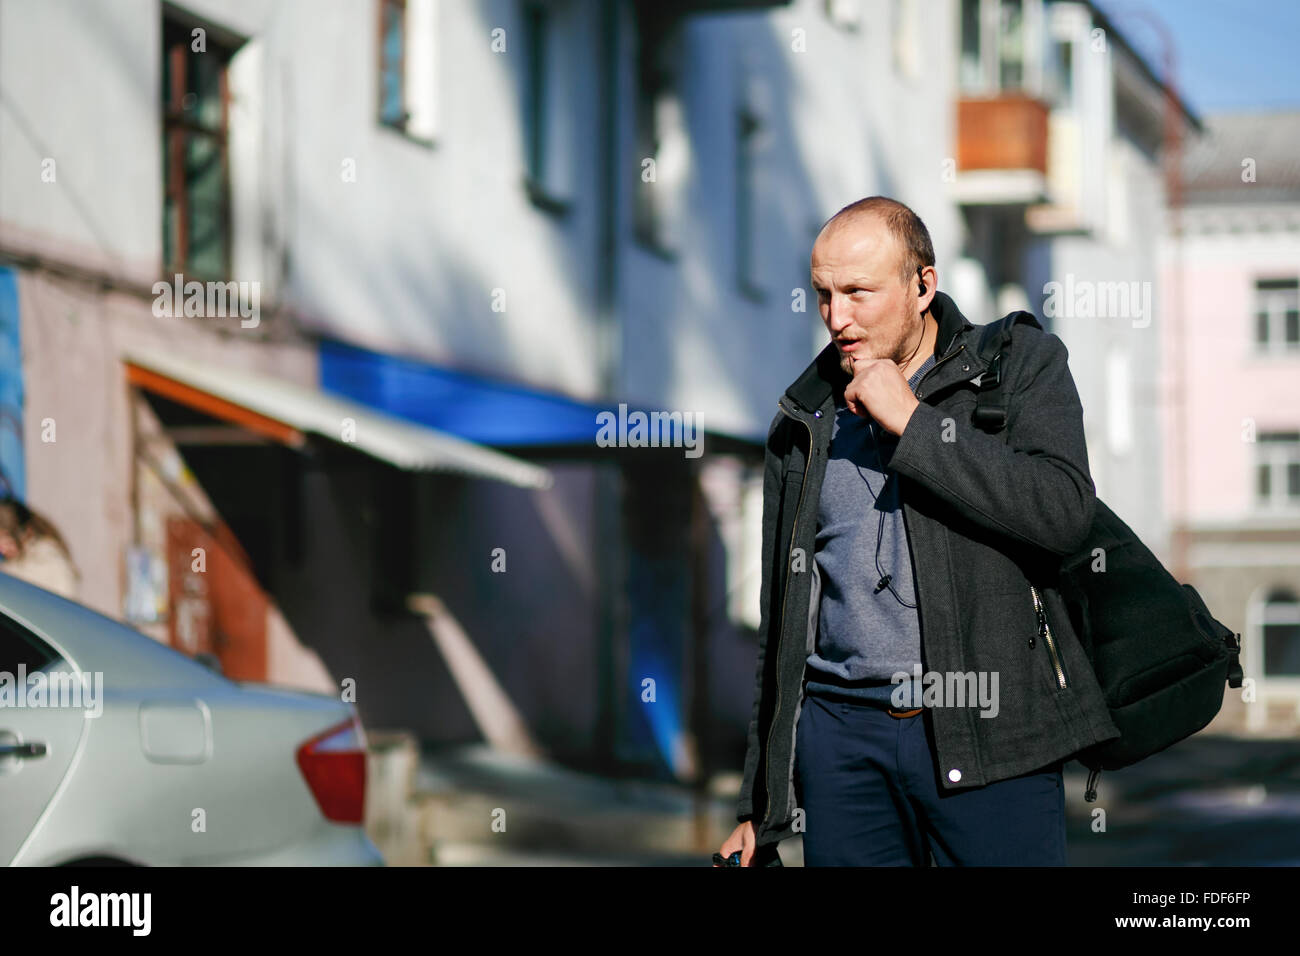 Brutale fotografo di strada con la fotocamera in mano a passeggiare per le strade delle città, parlando su un walkie-talkie vivavoce. Foto Stock